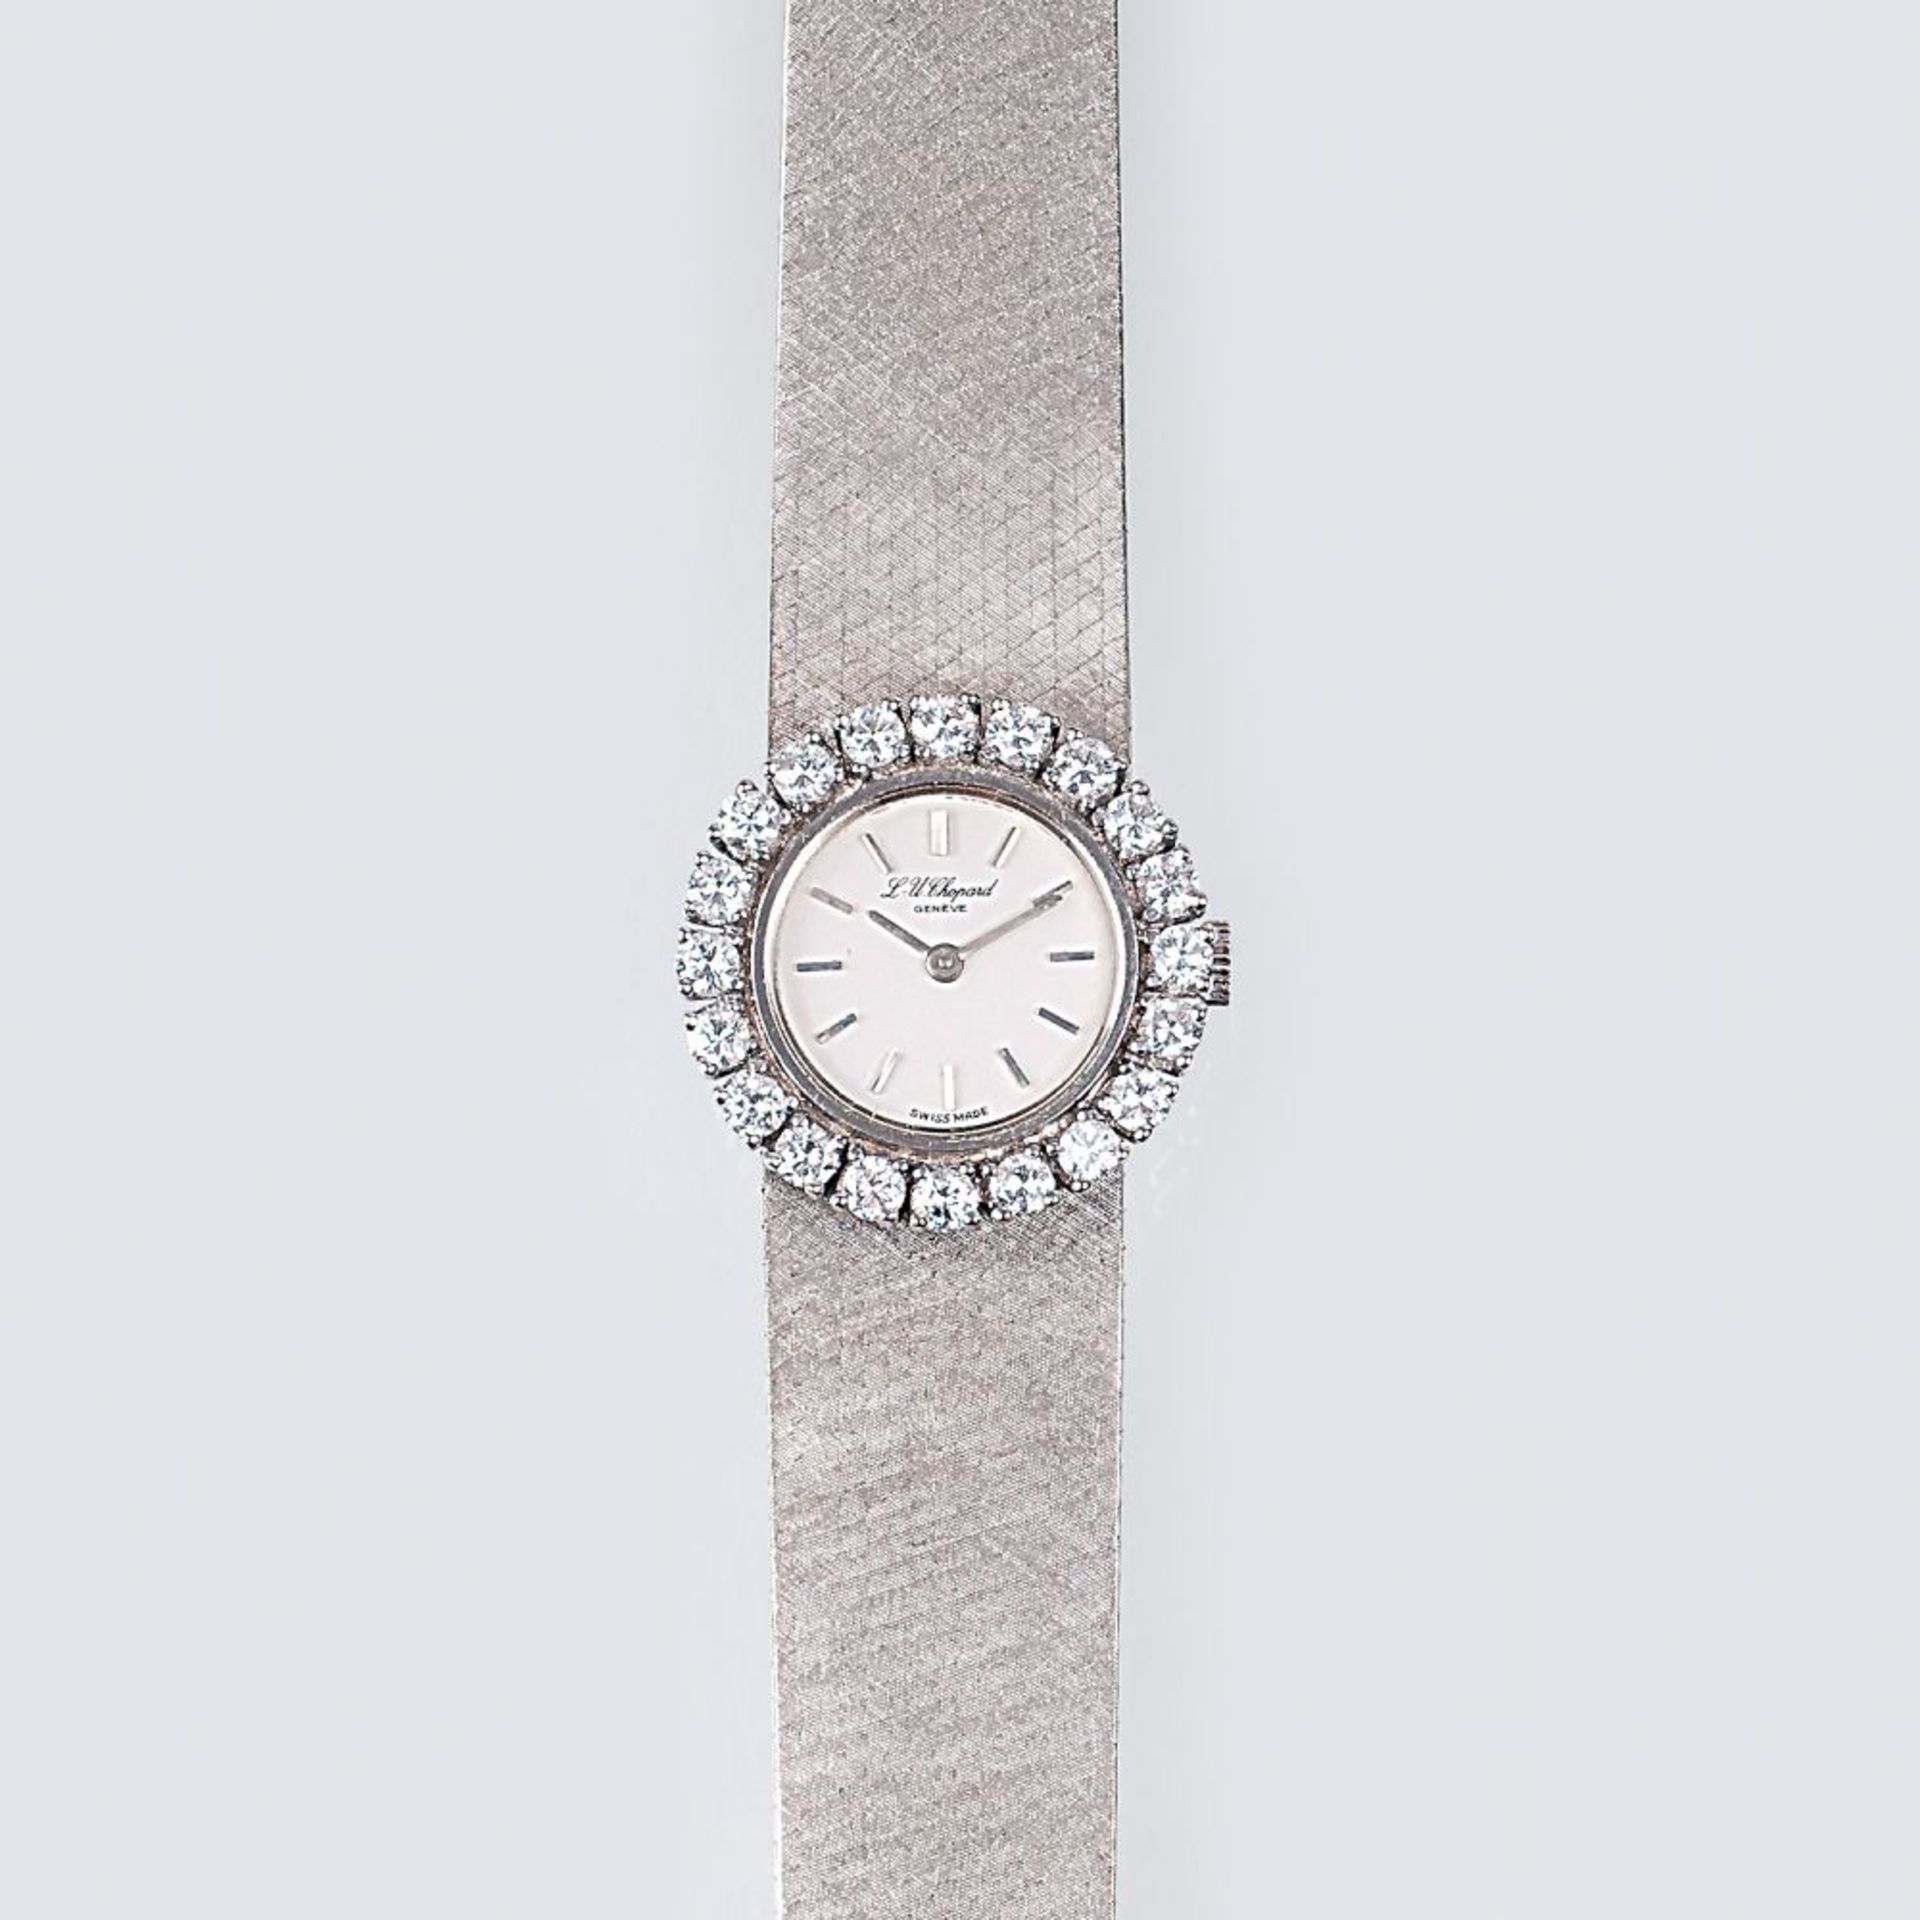 Chopard gegr. 1860 in Sonvilier. L.U.C. Damen-Armbanduhr mit Brillant-Besatz. Um 1970. 18 kt. WG,